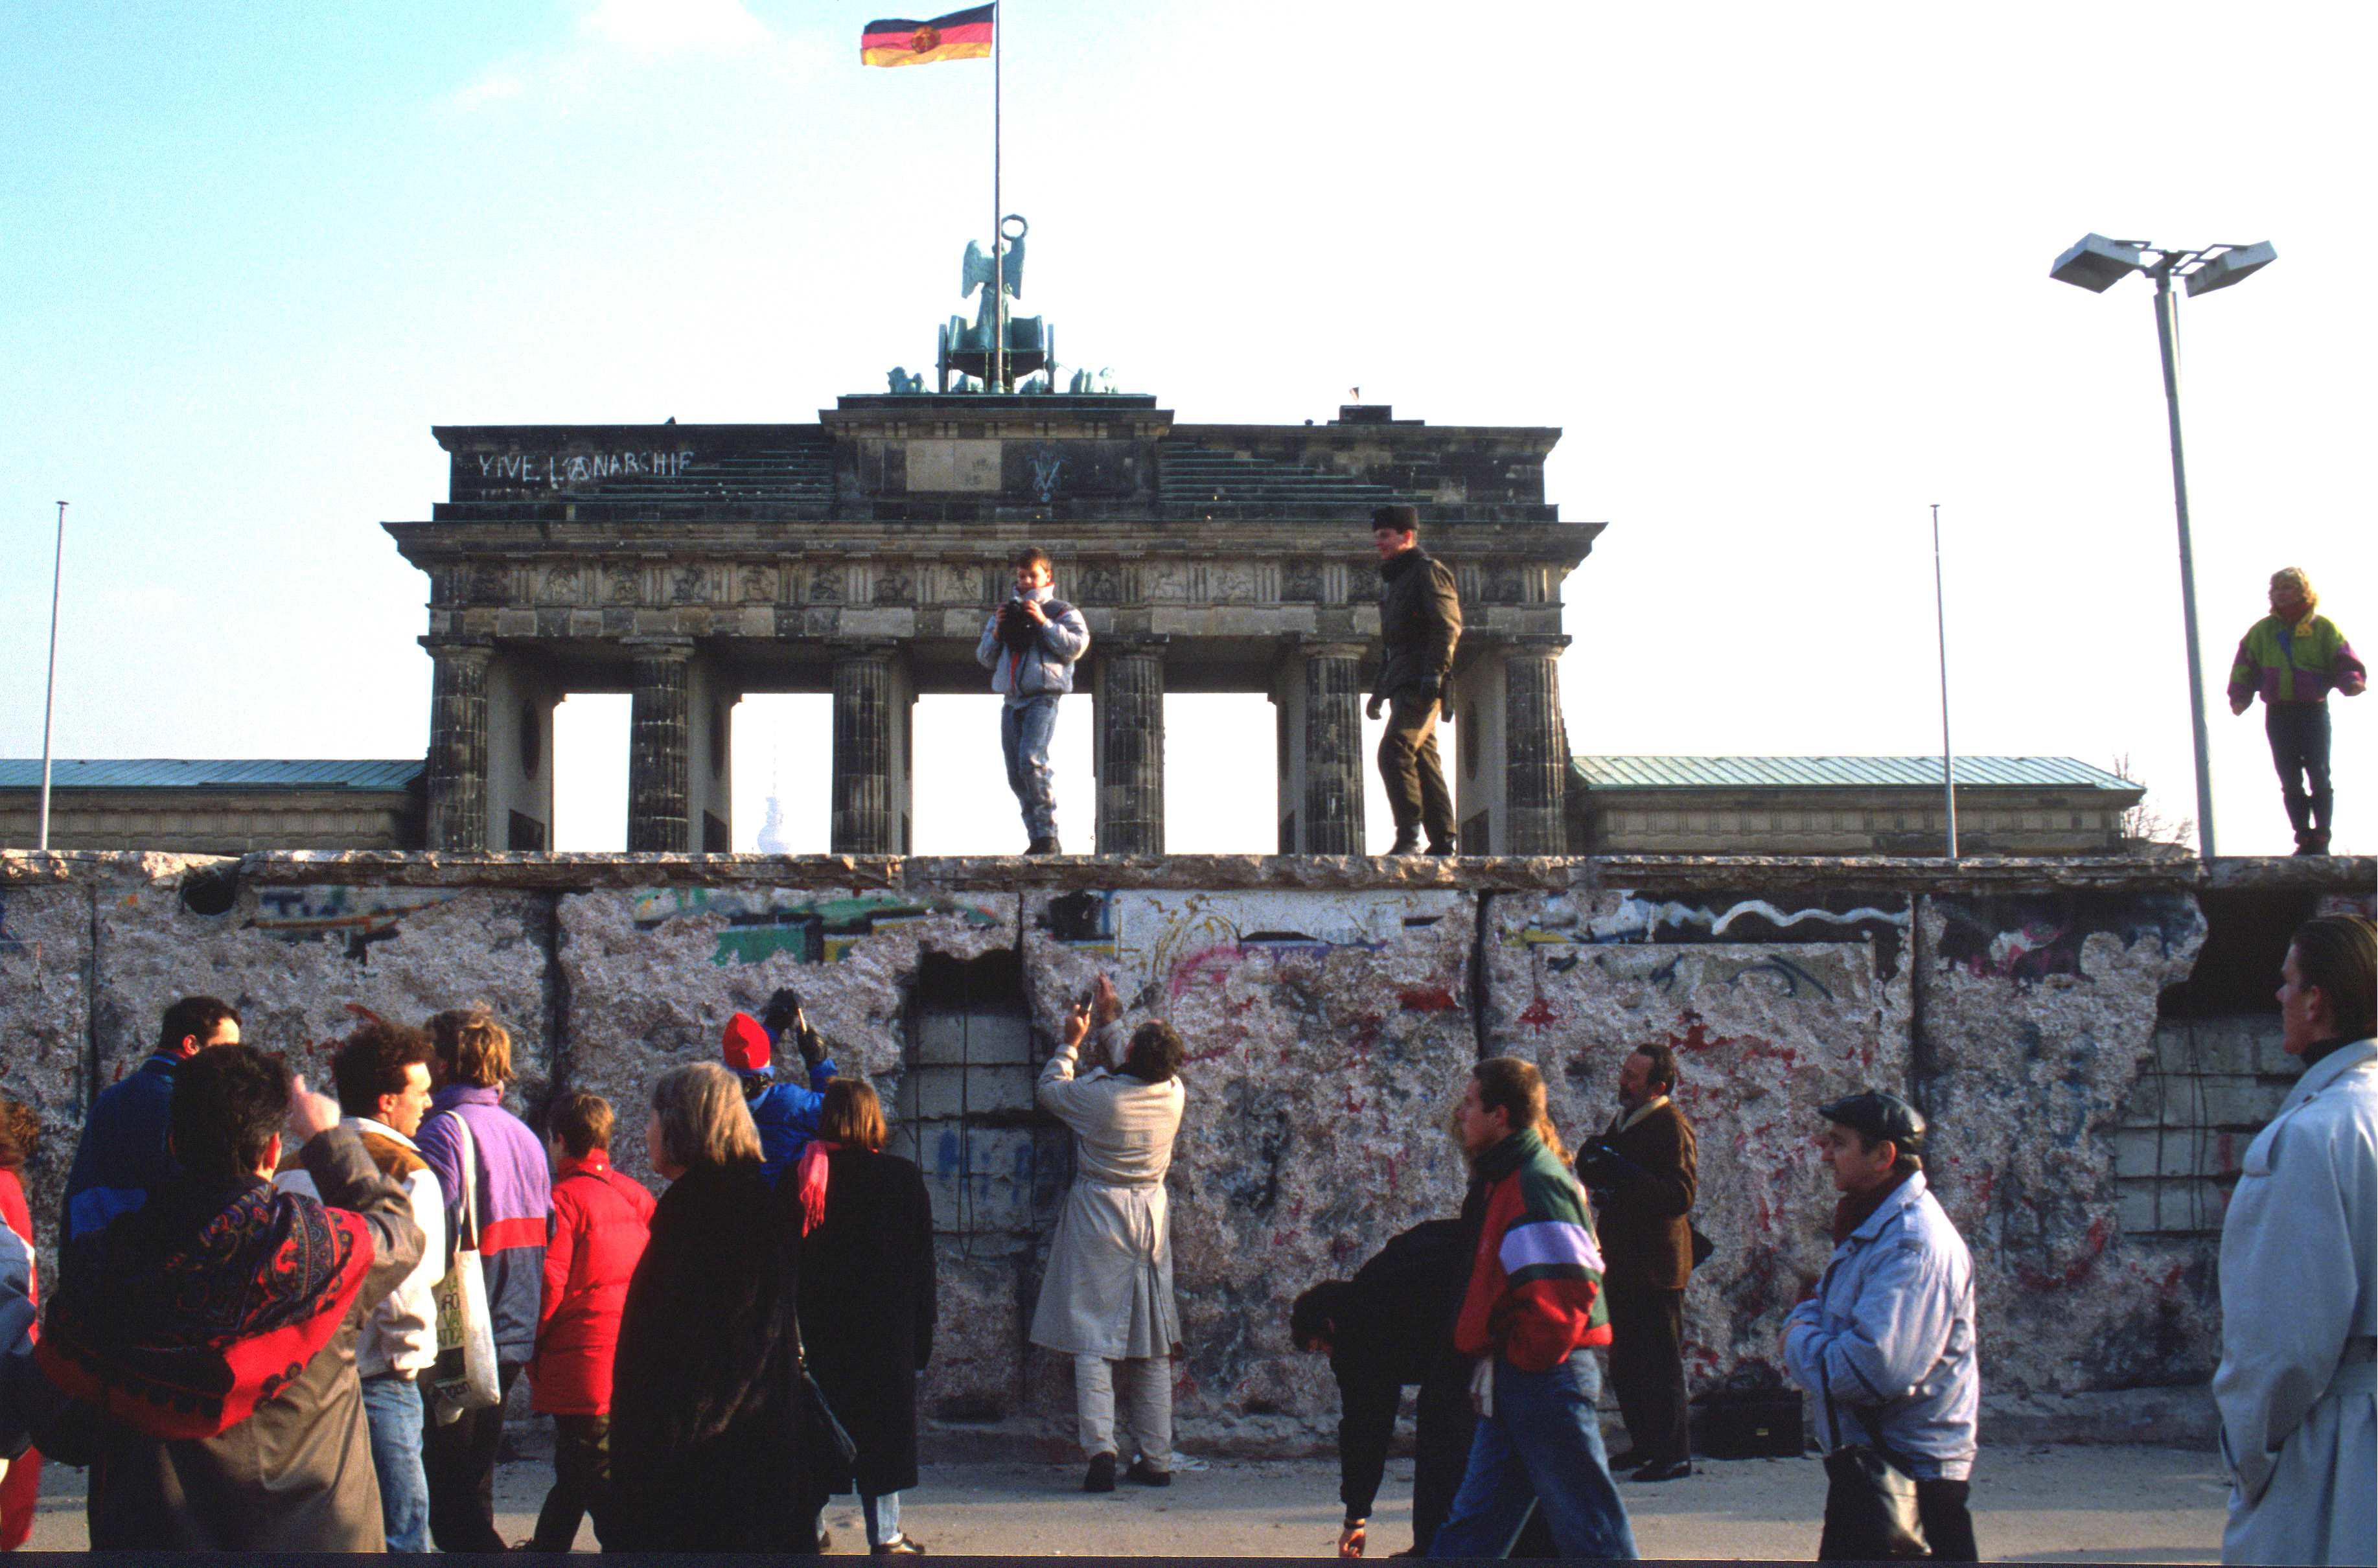 Il 9 novembre del 1990, giorno in cui vengono aperti i checkpoint, è la data simbolo della caduta del muro di Berlino eretto dal regime comunista della Germania Est. La barriera ha diviso la città per 28 anni (1961-1989). L’abbattimento ufficiale è iniziato nel giugno del 1990 per concludersi a novembre. Nella foto due mesi dopo la caduta del muro presso la Porta di Brandeburgo (foto Manfred Vollmer/Das/Infophoto)